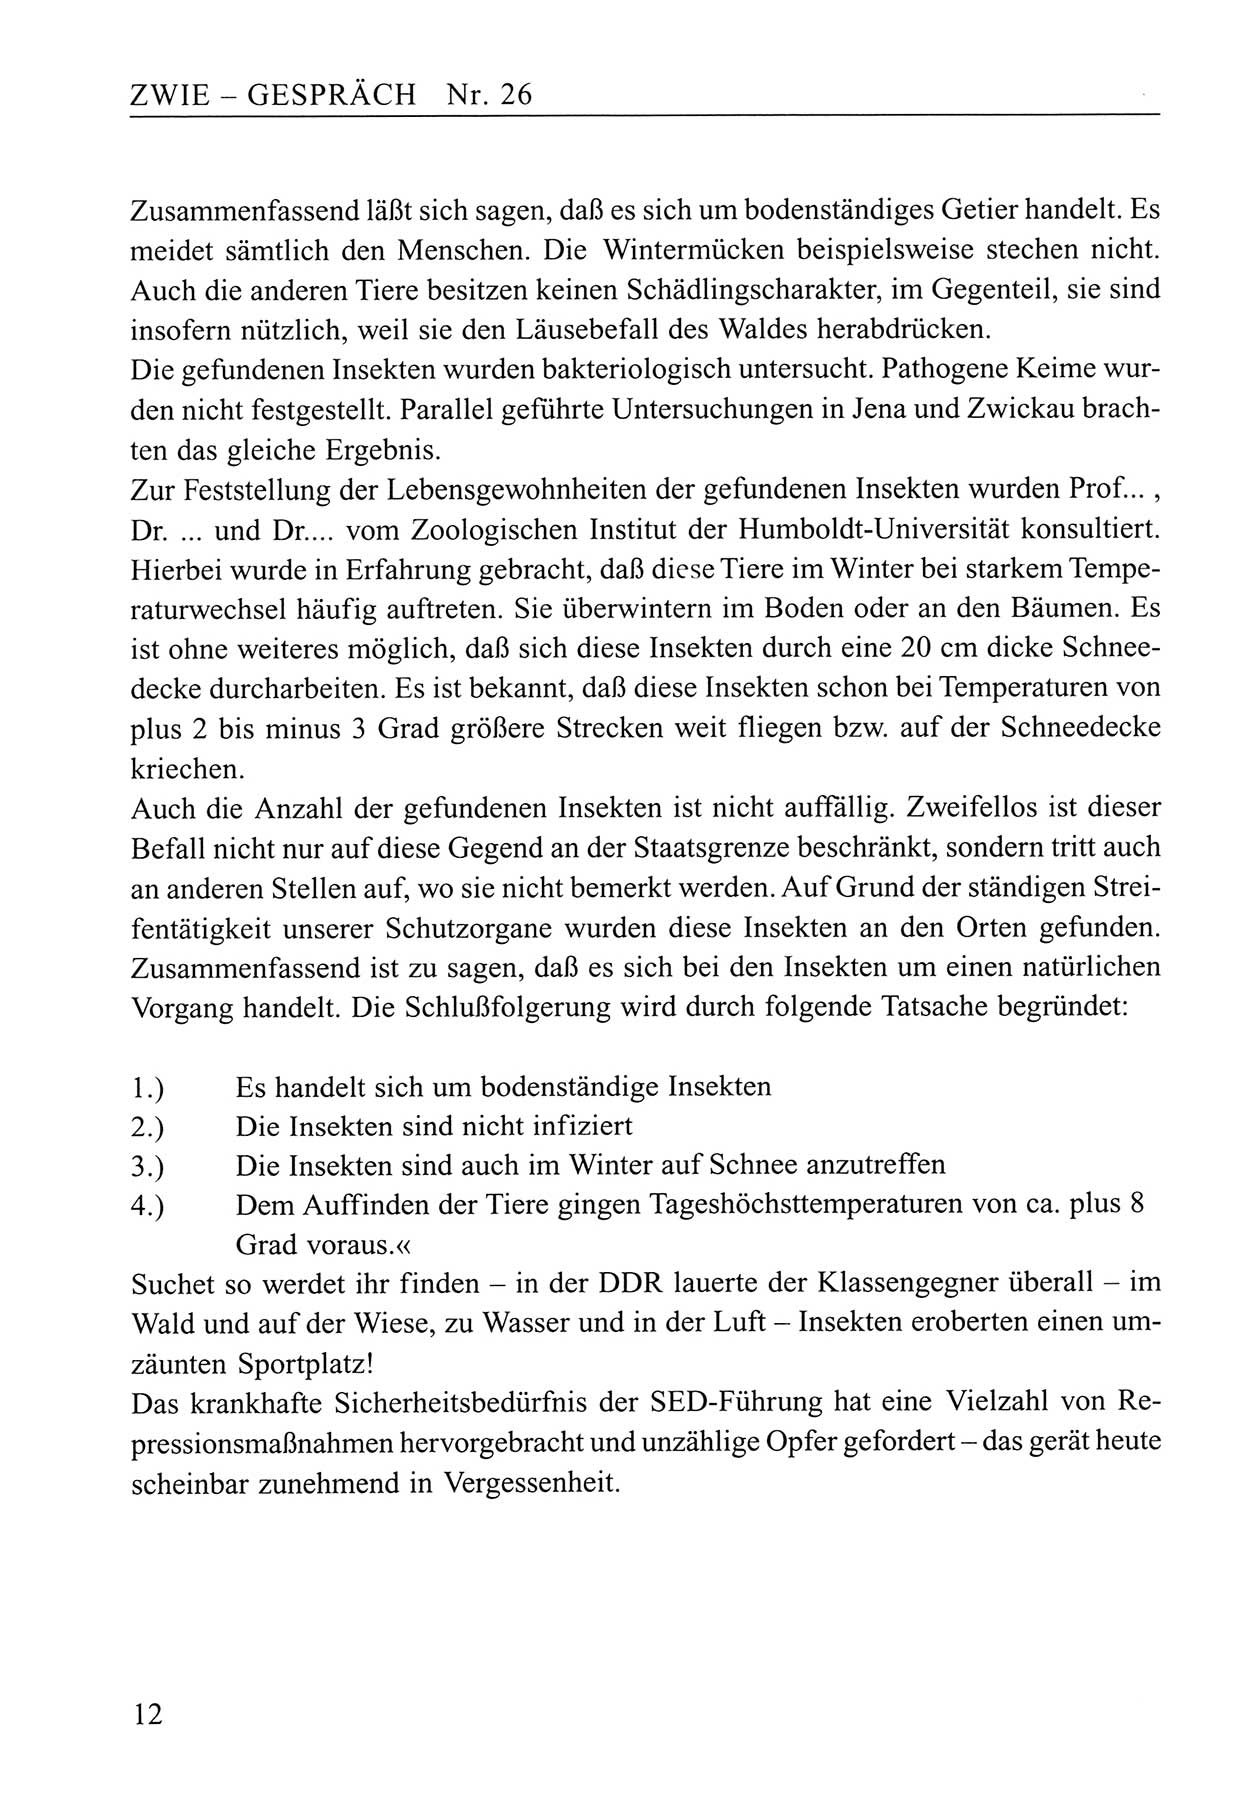 Zwie-Gespräch, Beiträge zum Umgang mit der Staatssicherheits-Vergangenheit [Deutsche Demokratische Republik (DDR)], Ausgabe Nr. 26, Berlin 1995, Seite 12 (Zwie-Gespr. Ausg. 26 1995, S. 12)